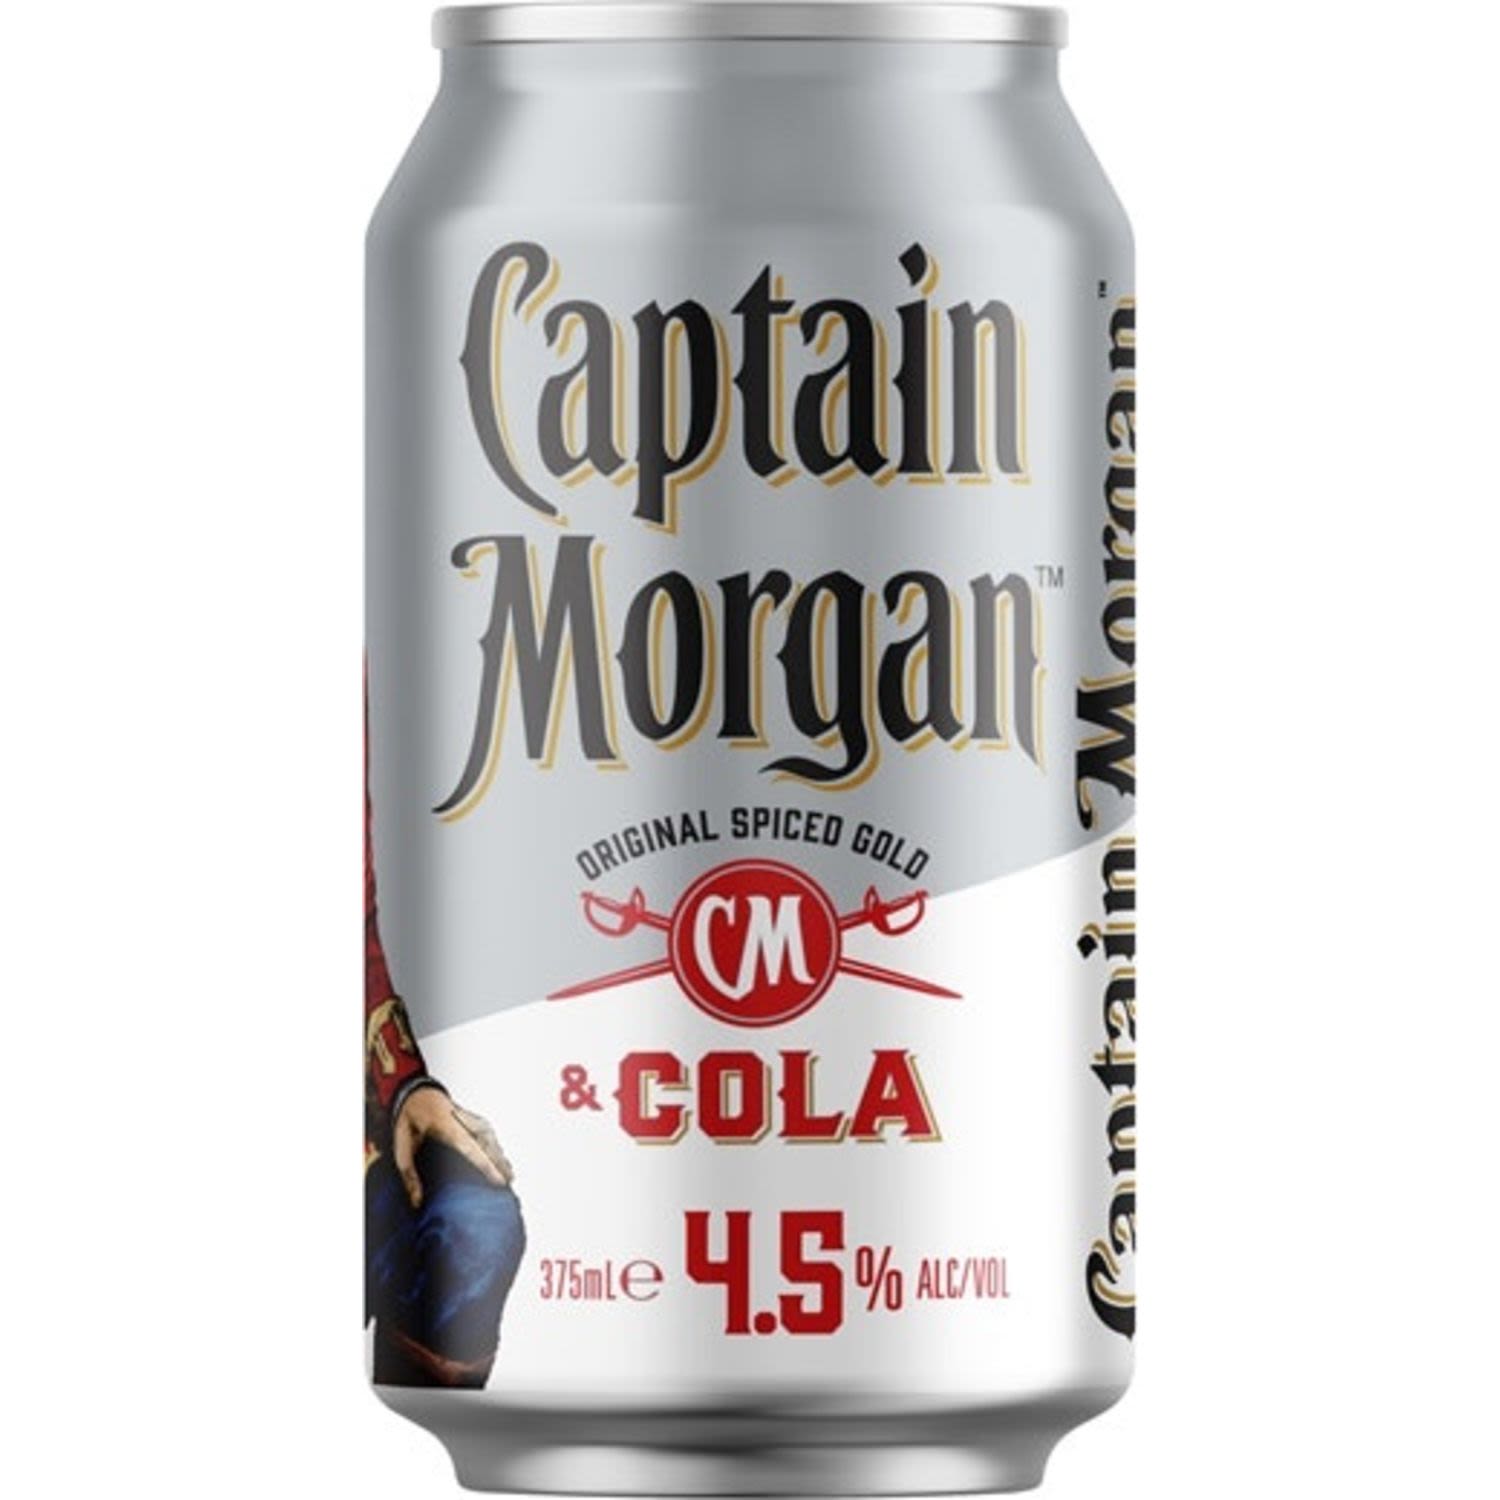 Captain Morgan Original Spiced Gold & Cola 4.5% Can 375mL